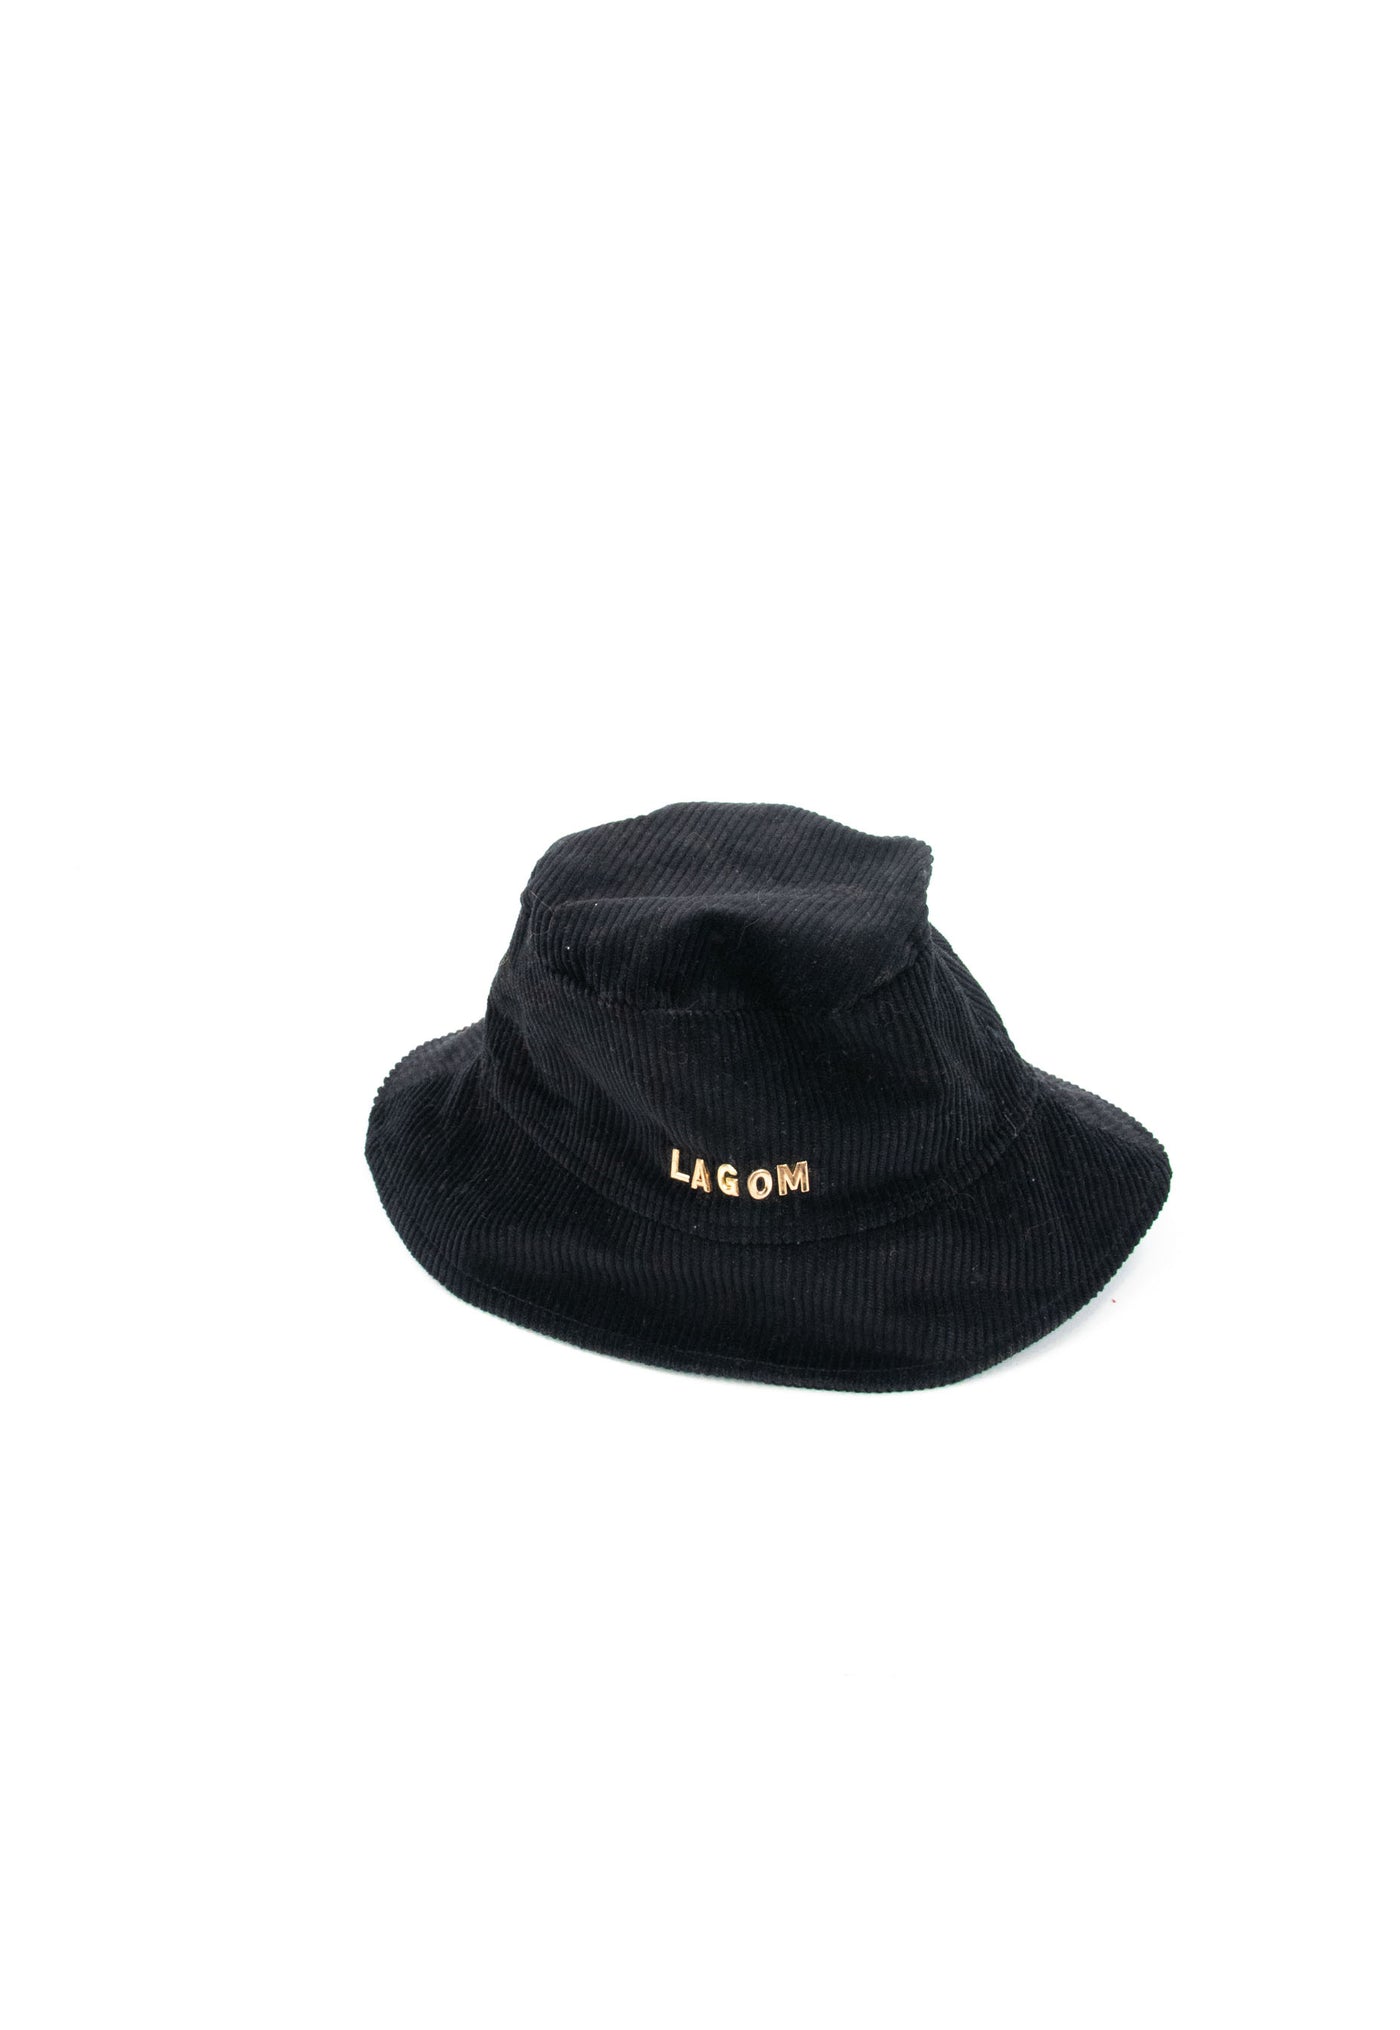 Bucket hat negro de pana